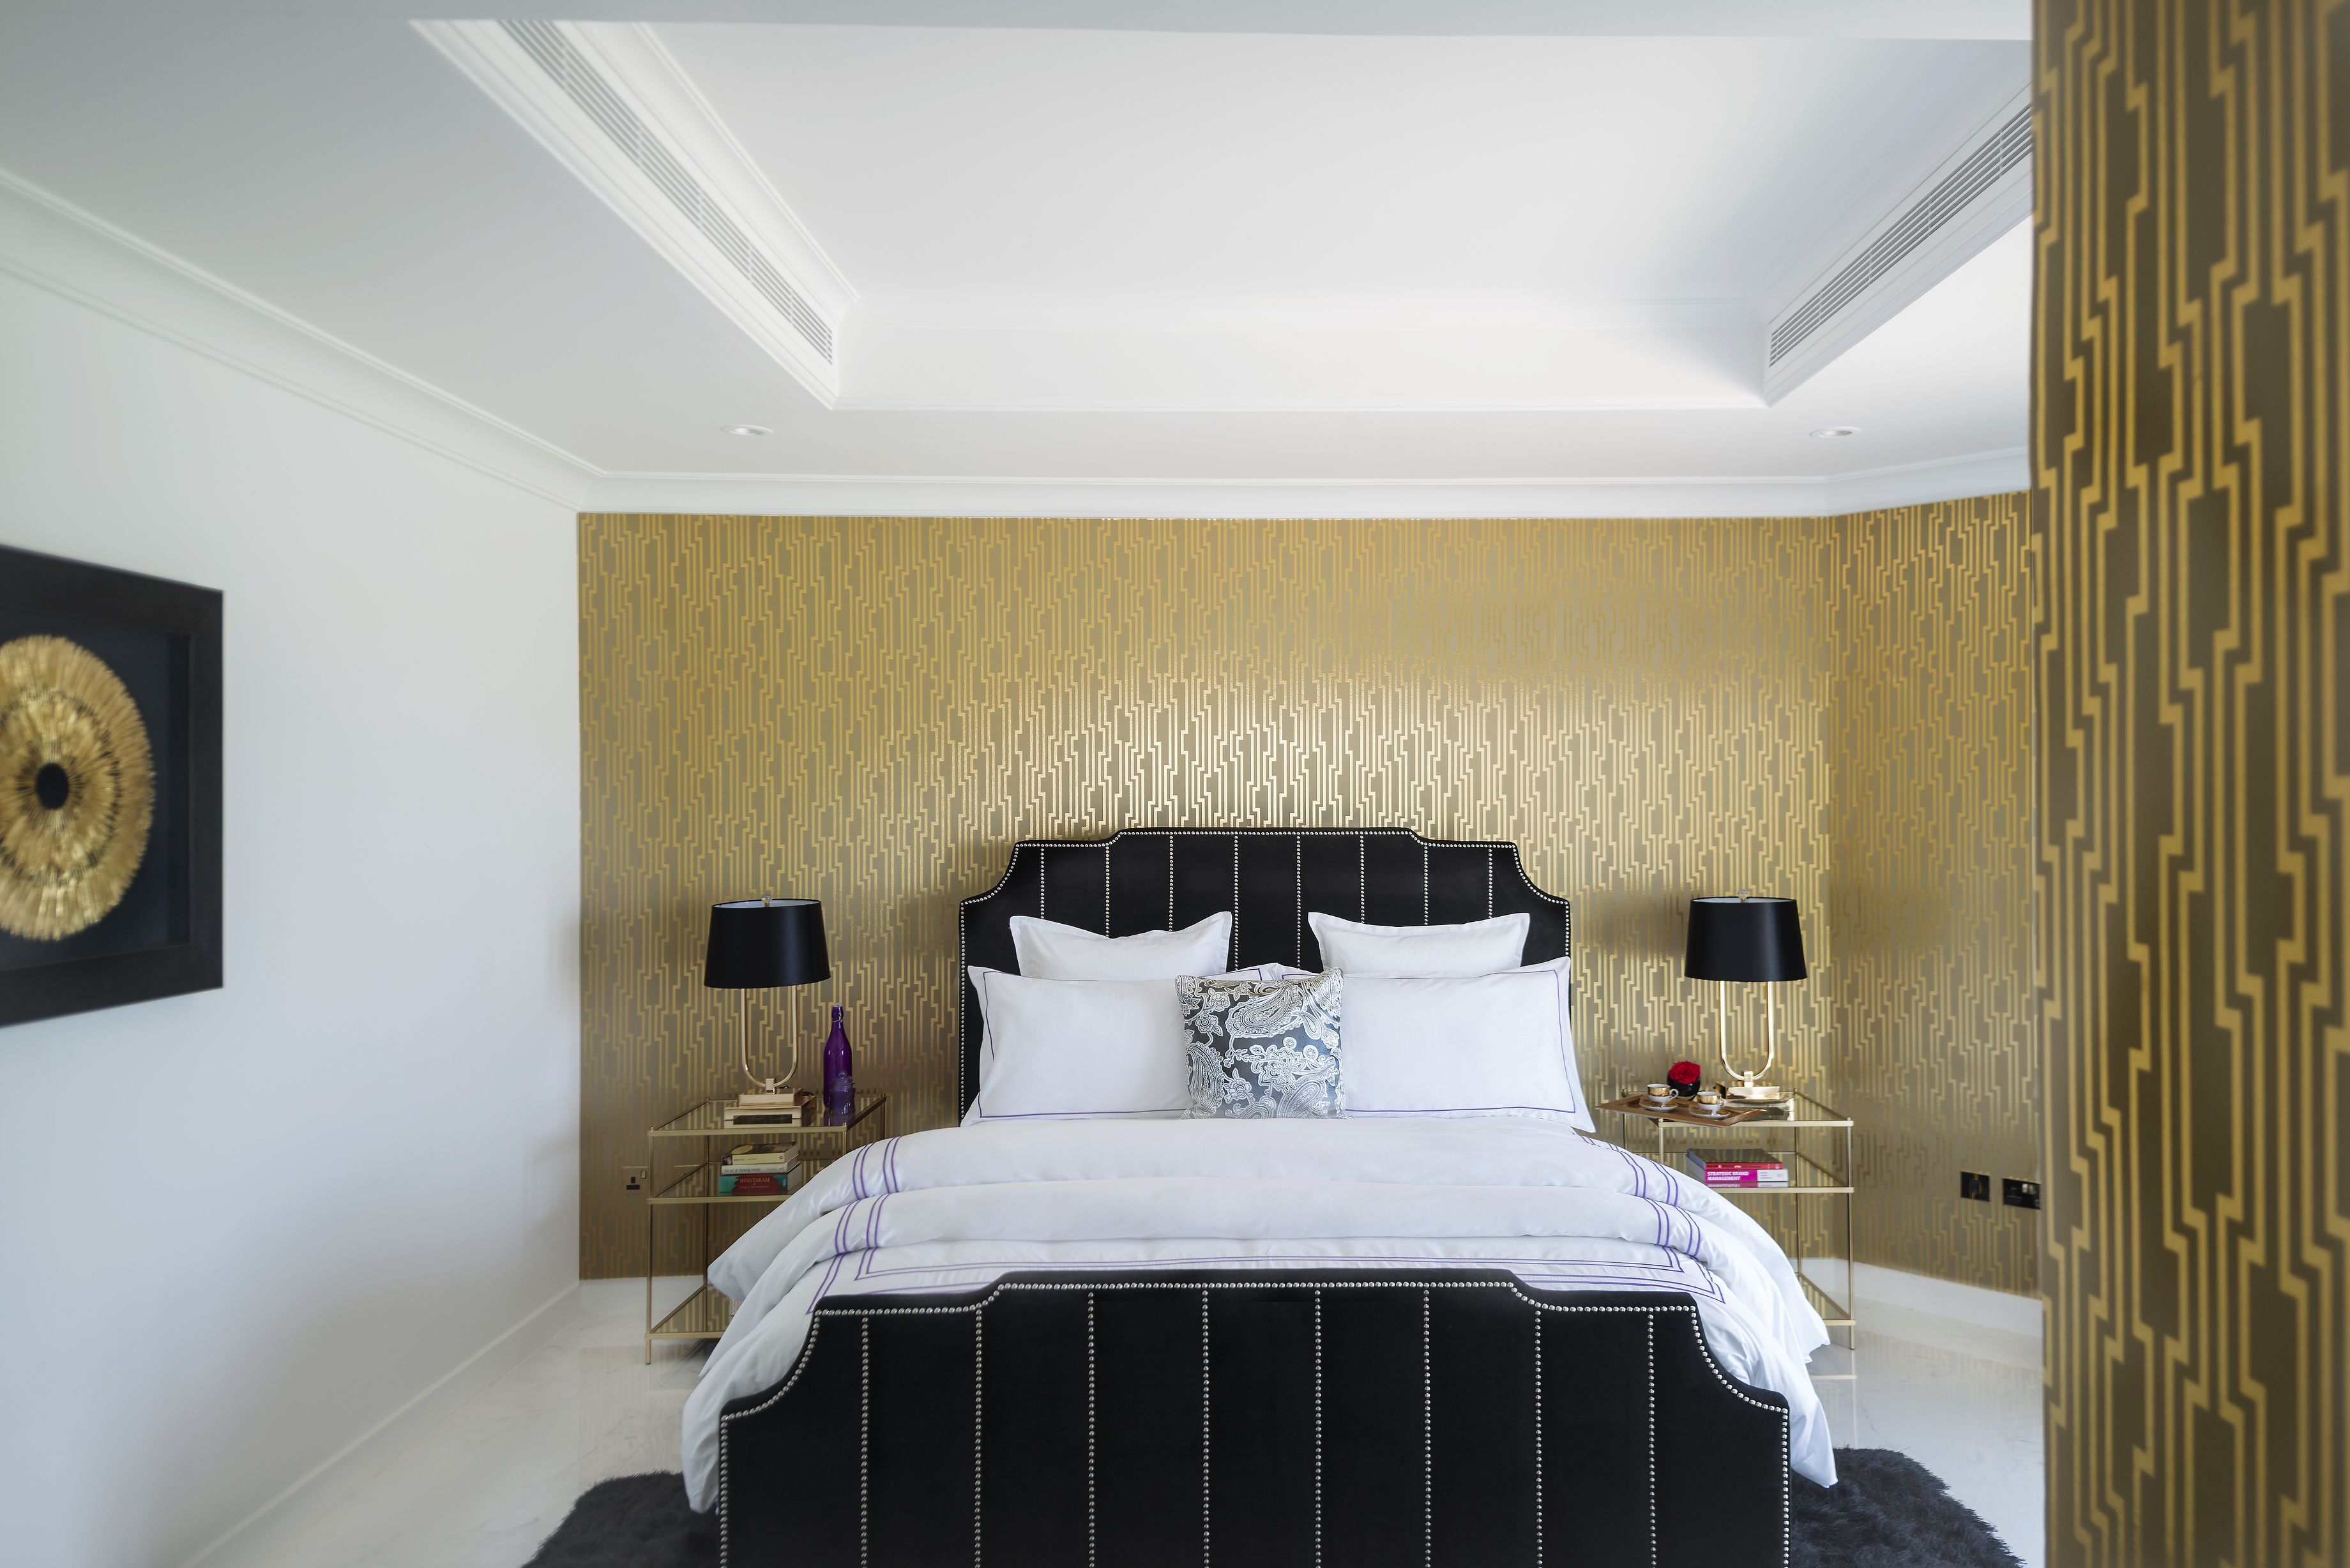 The Palm Jumeirah Villas - Frond E by Dream Inn Dubai